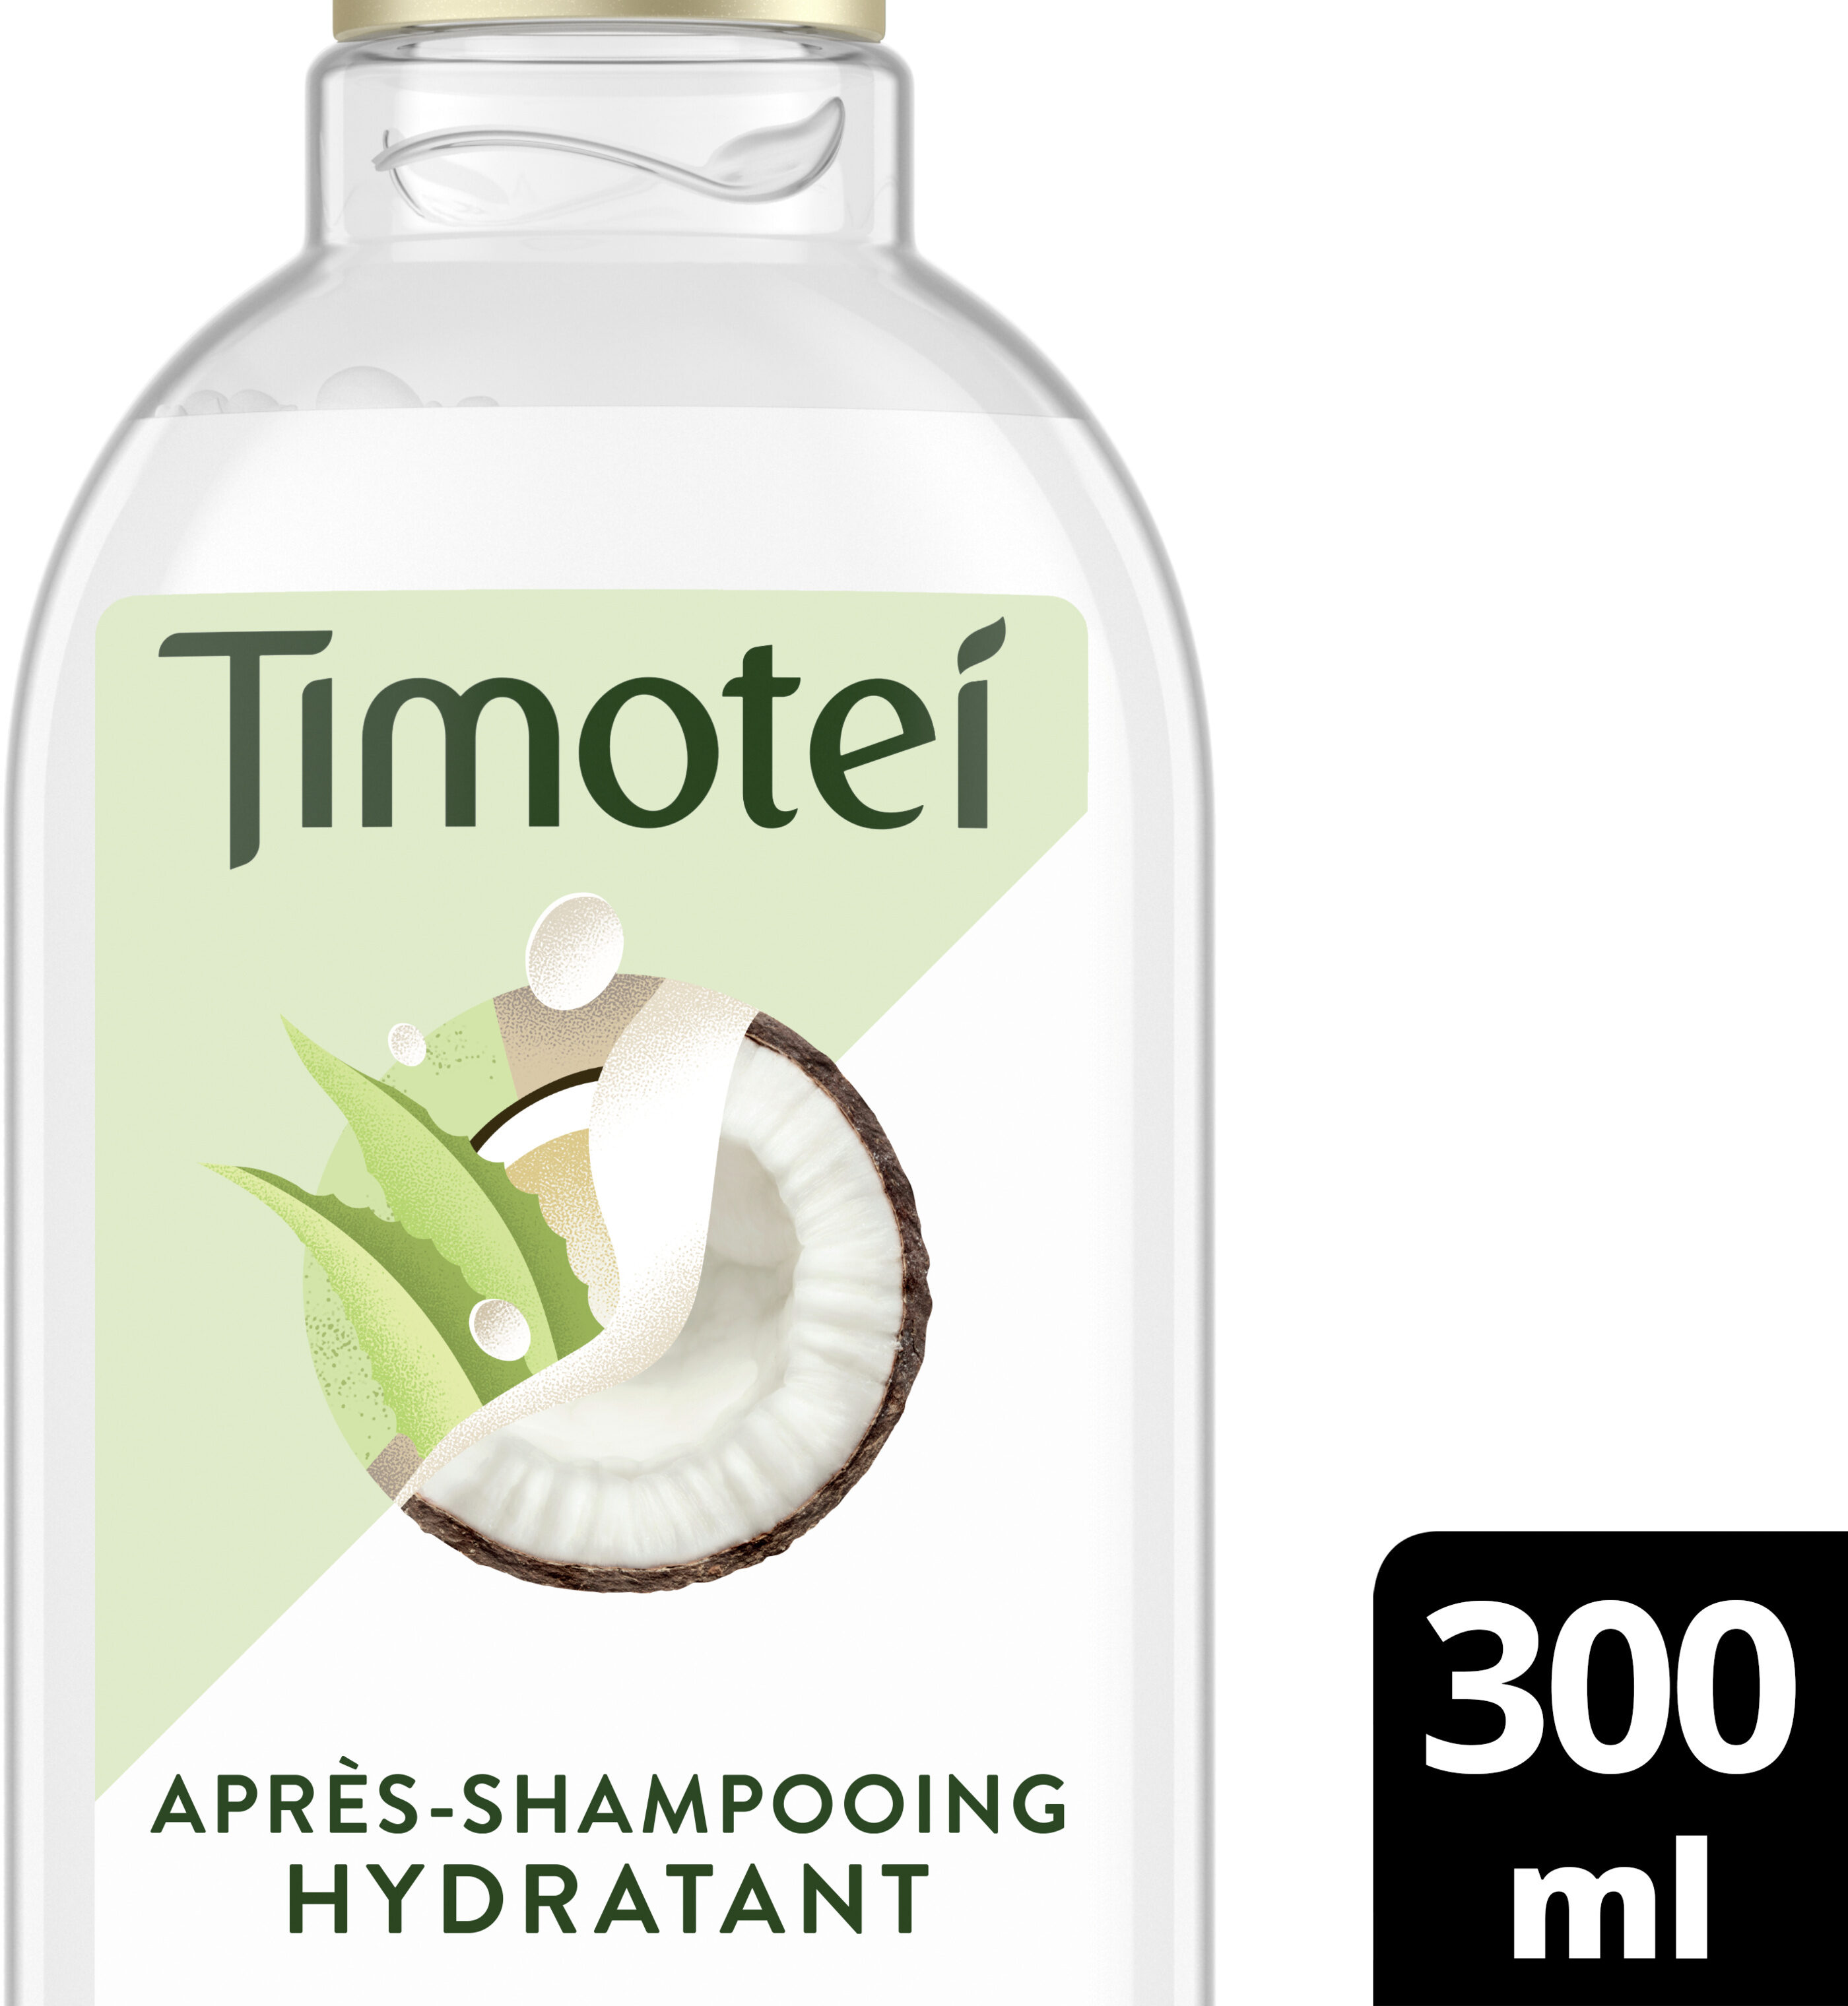 Timotei Après-Shampooing Femme Lait de coco et aloe vera - Product - fr